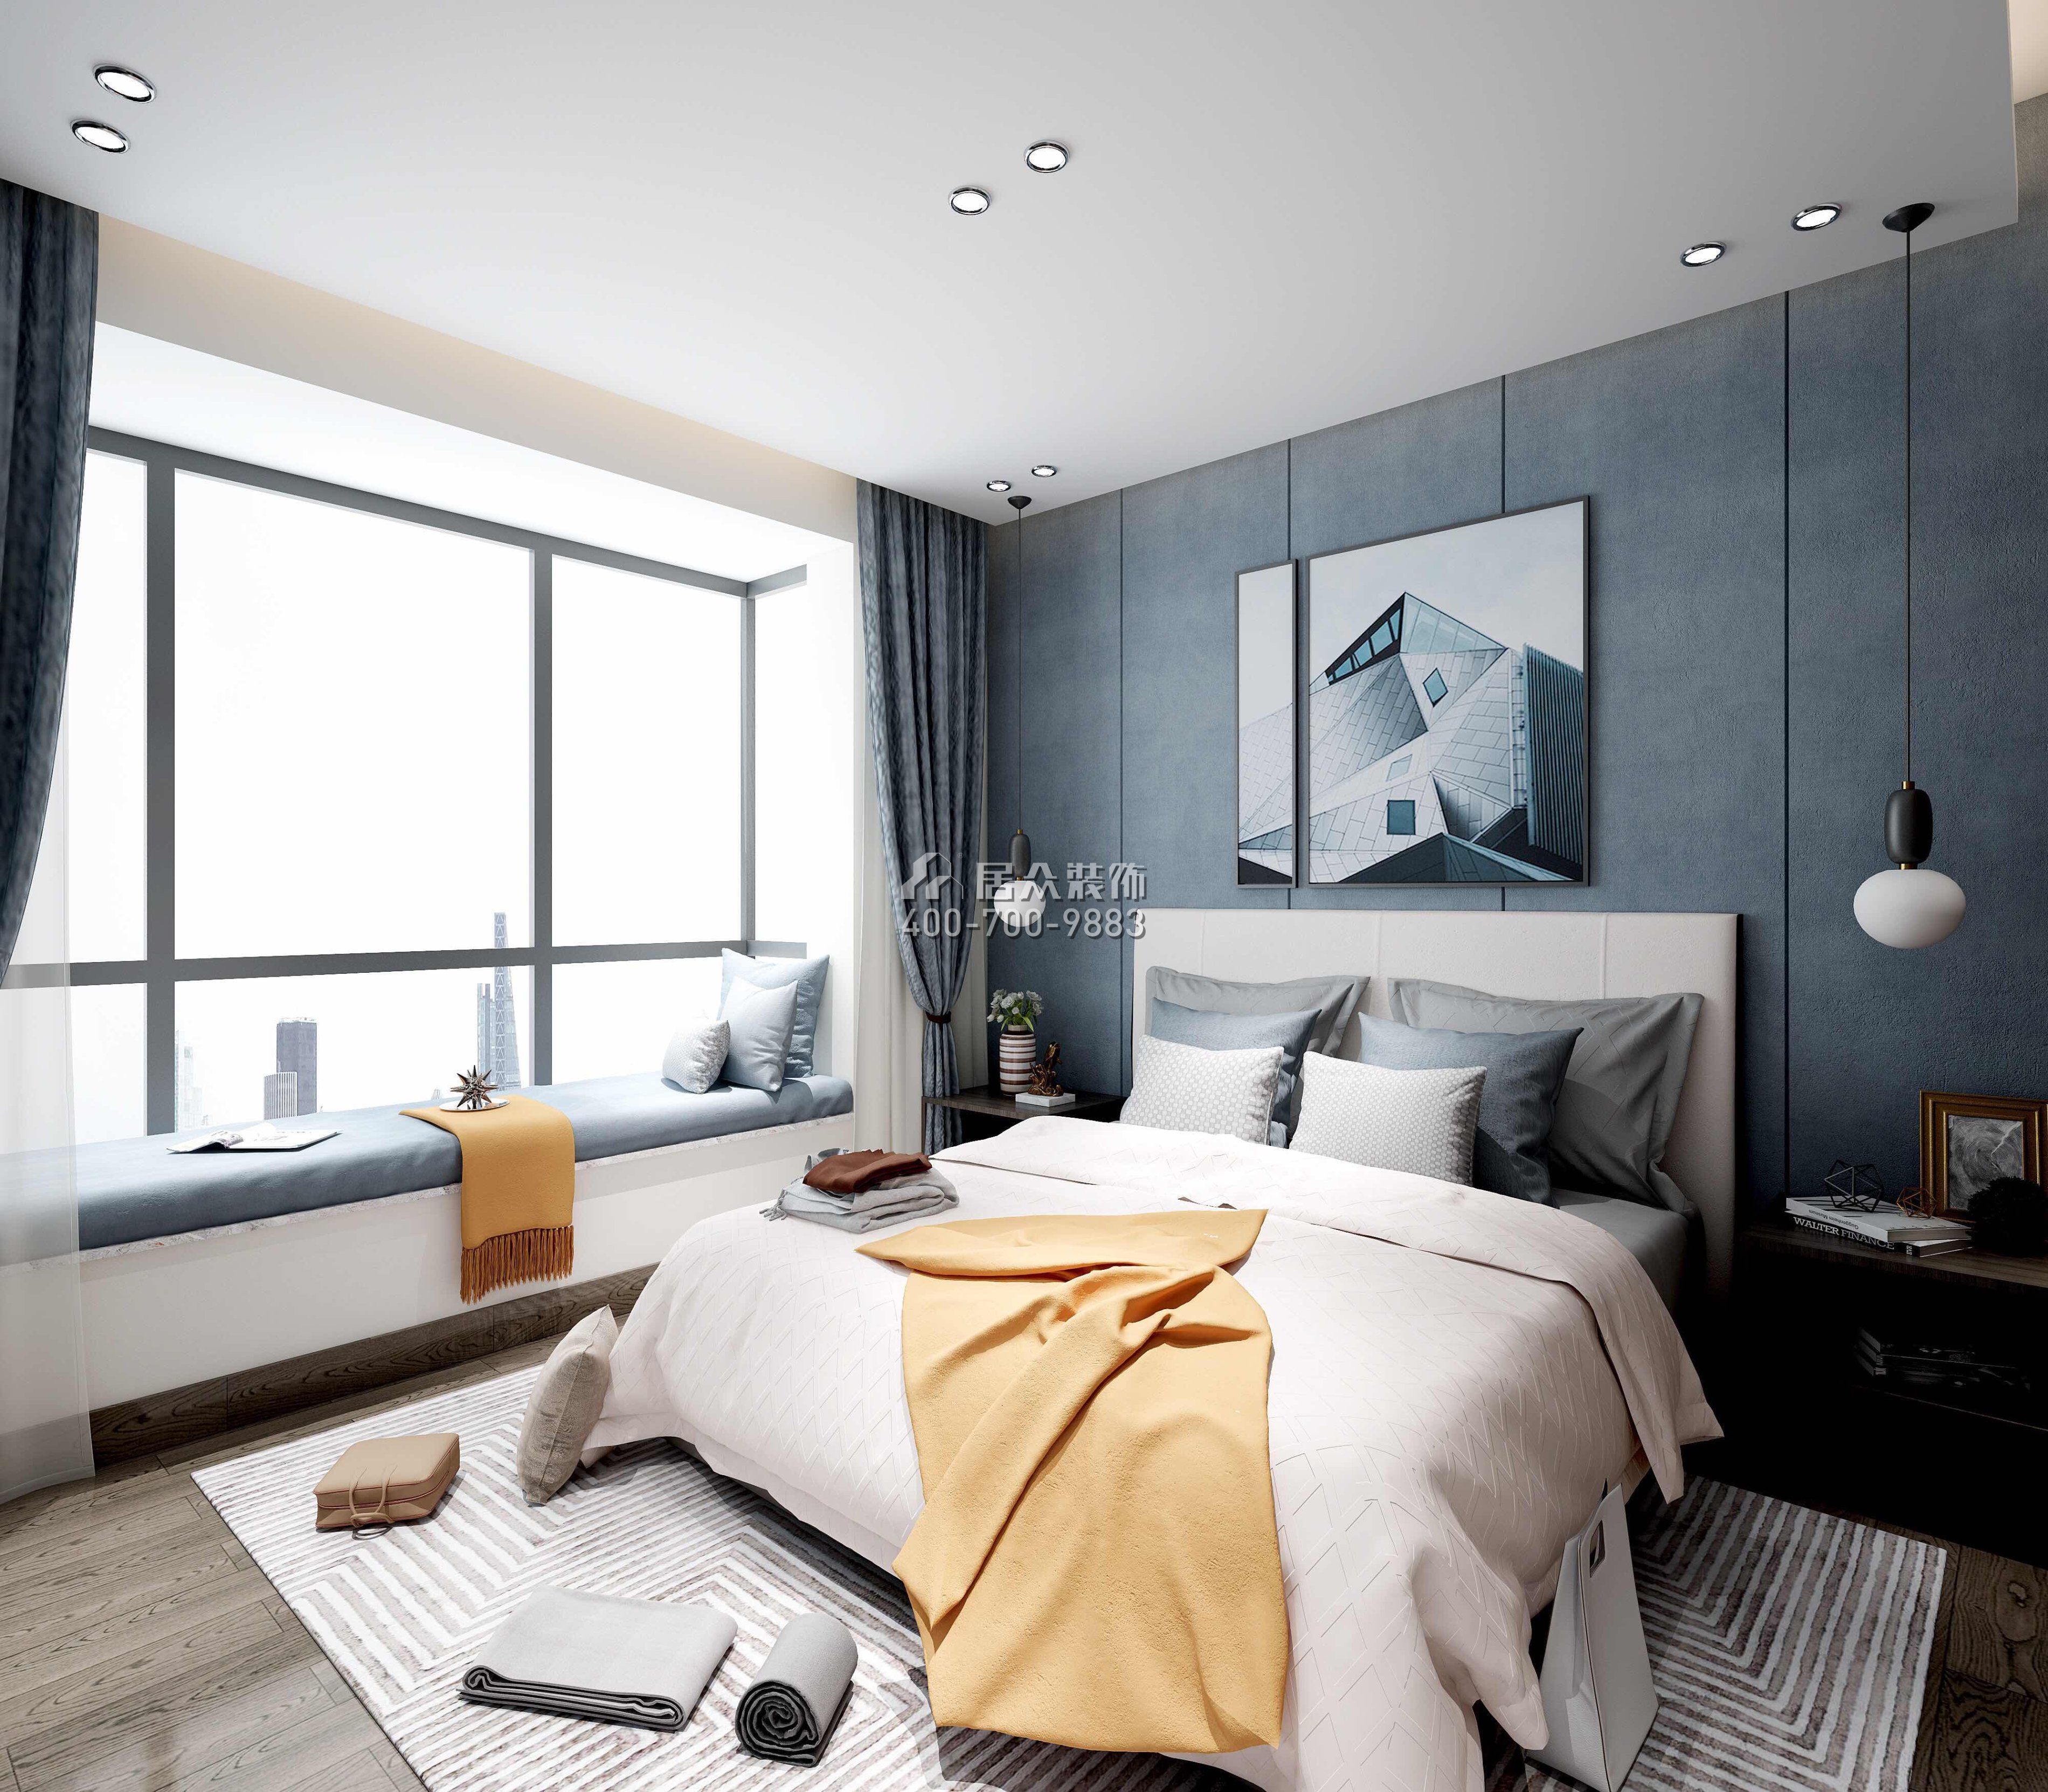 锦东花园190平方米现代简约风格平层户型卧室装修效果图